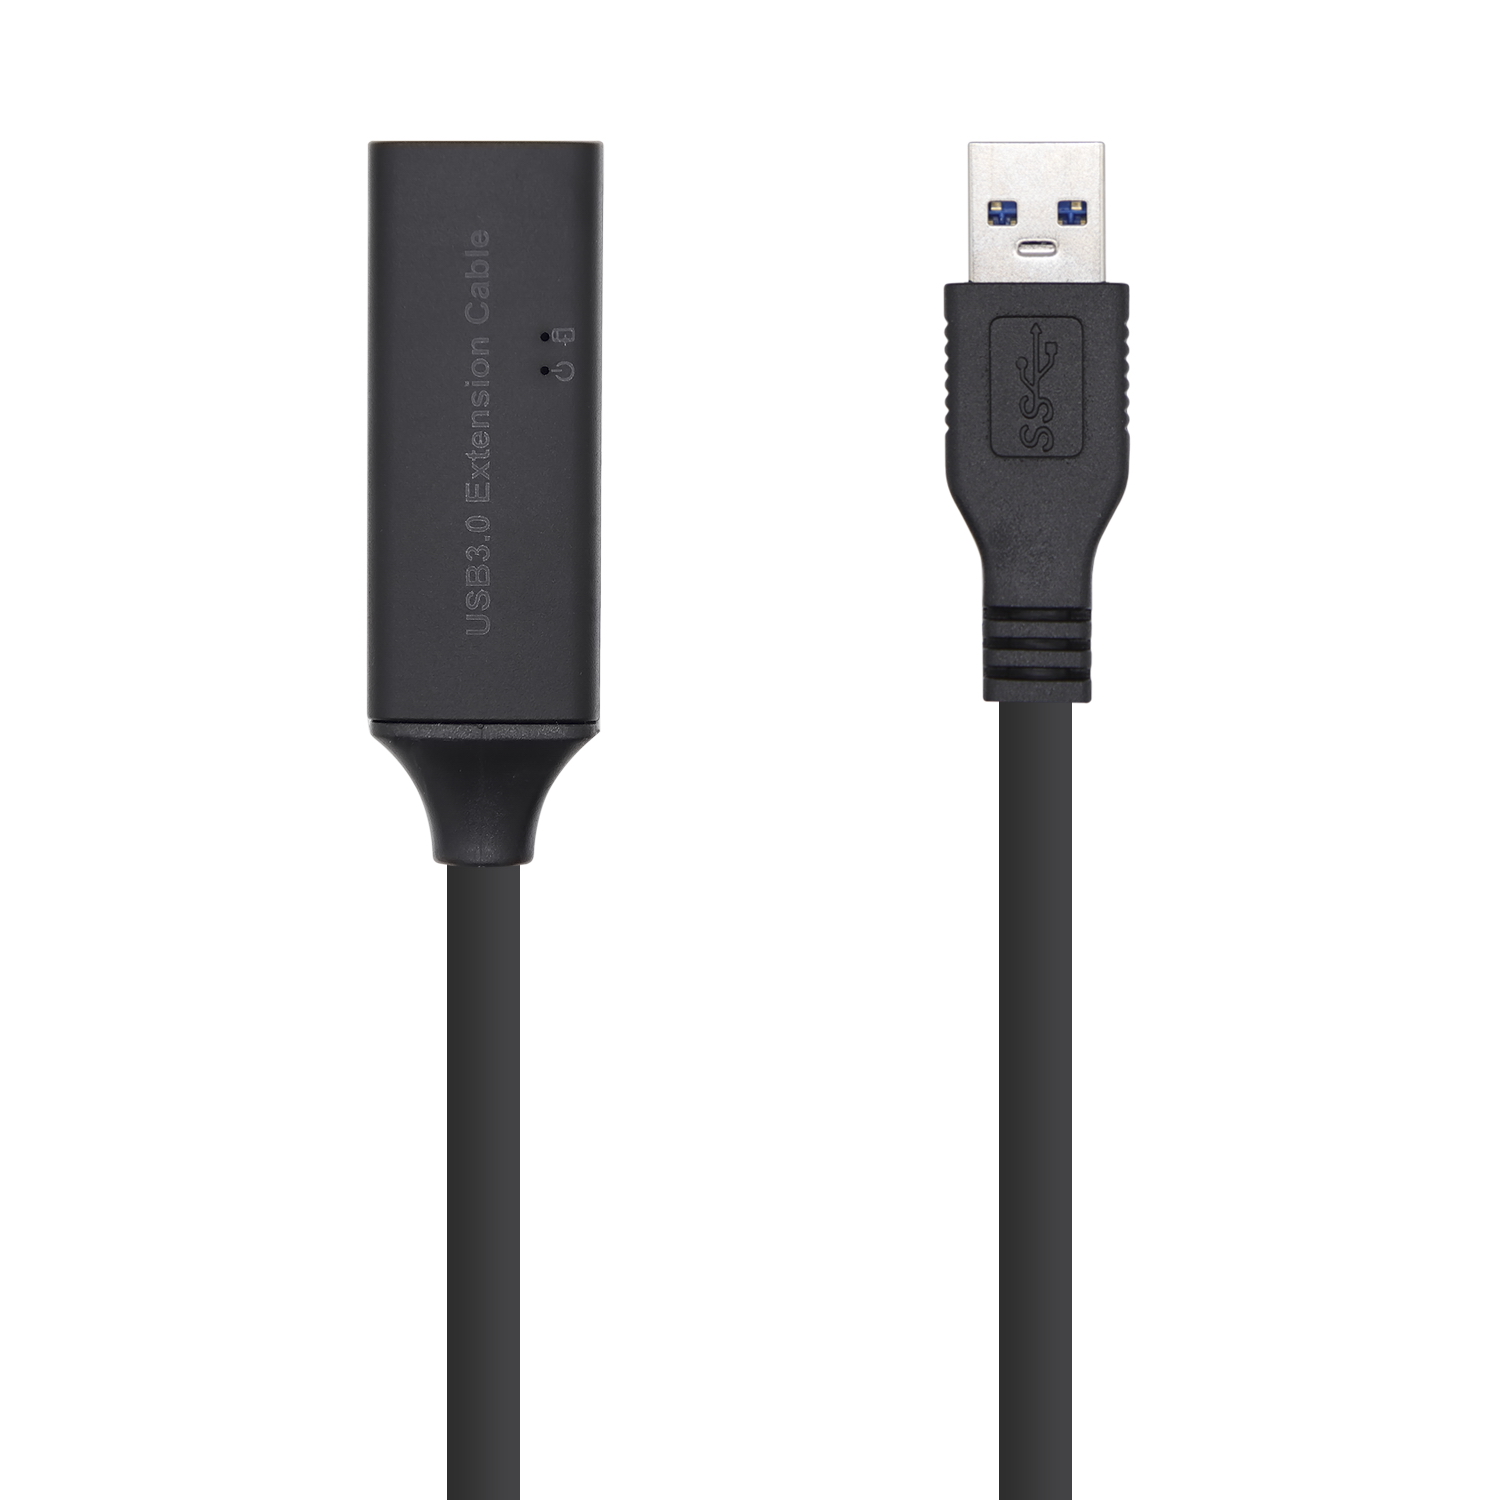 Aisens Câble d'Extension USB 3.0 avec Amplificateur et Alimentation - Type A/MA/H - 15m - Couleur Noir